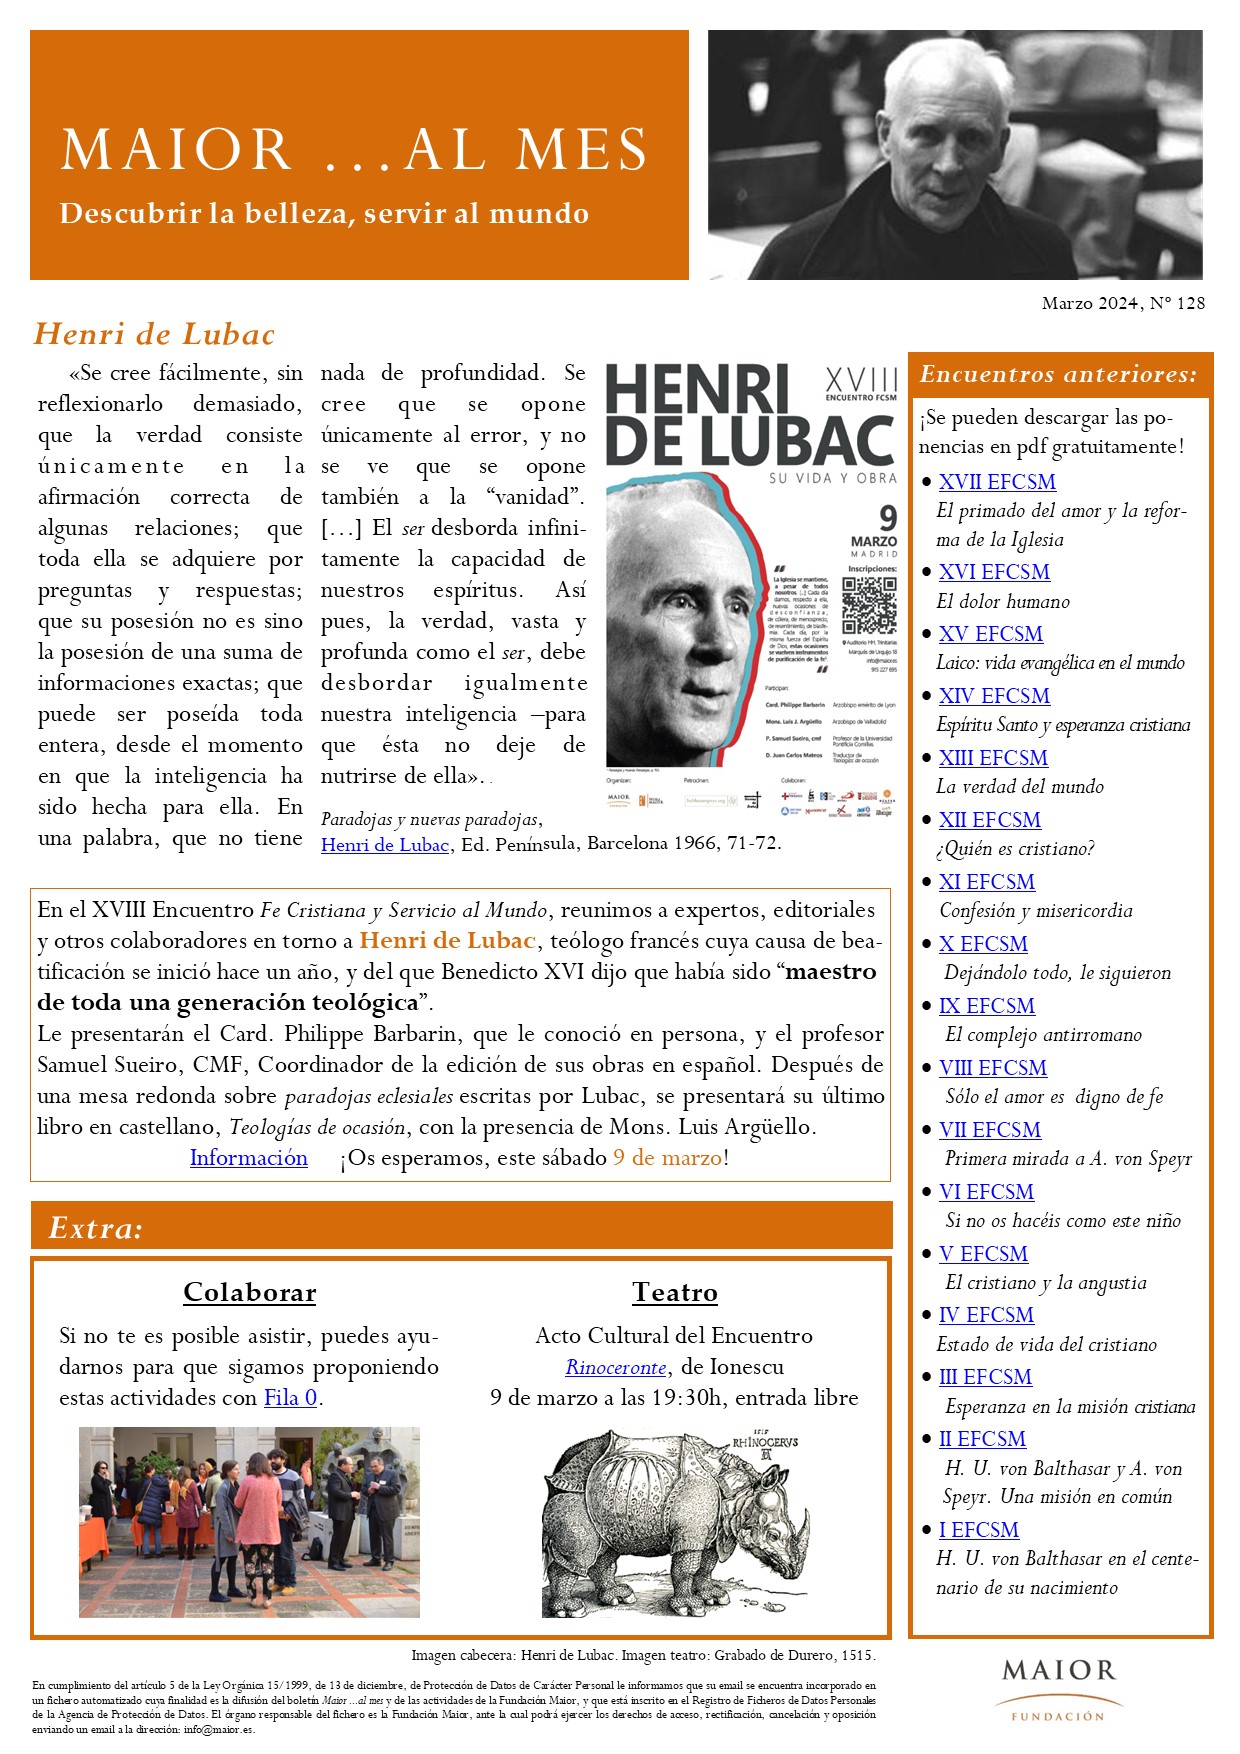 Boletín mensual de noticias y actividades de la Fundación Maior. Edición de marzo 2024